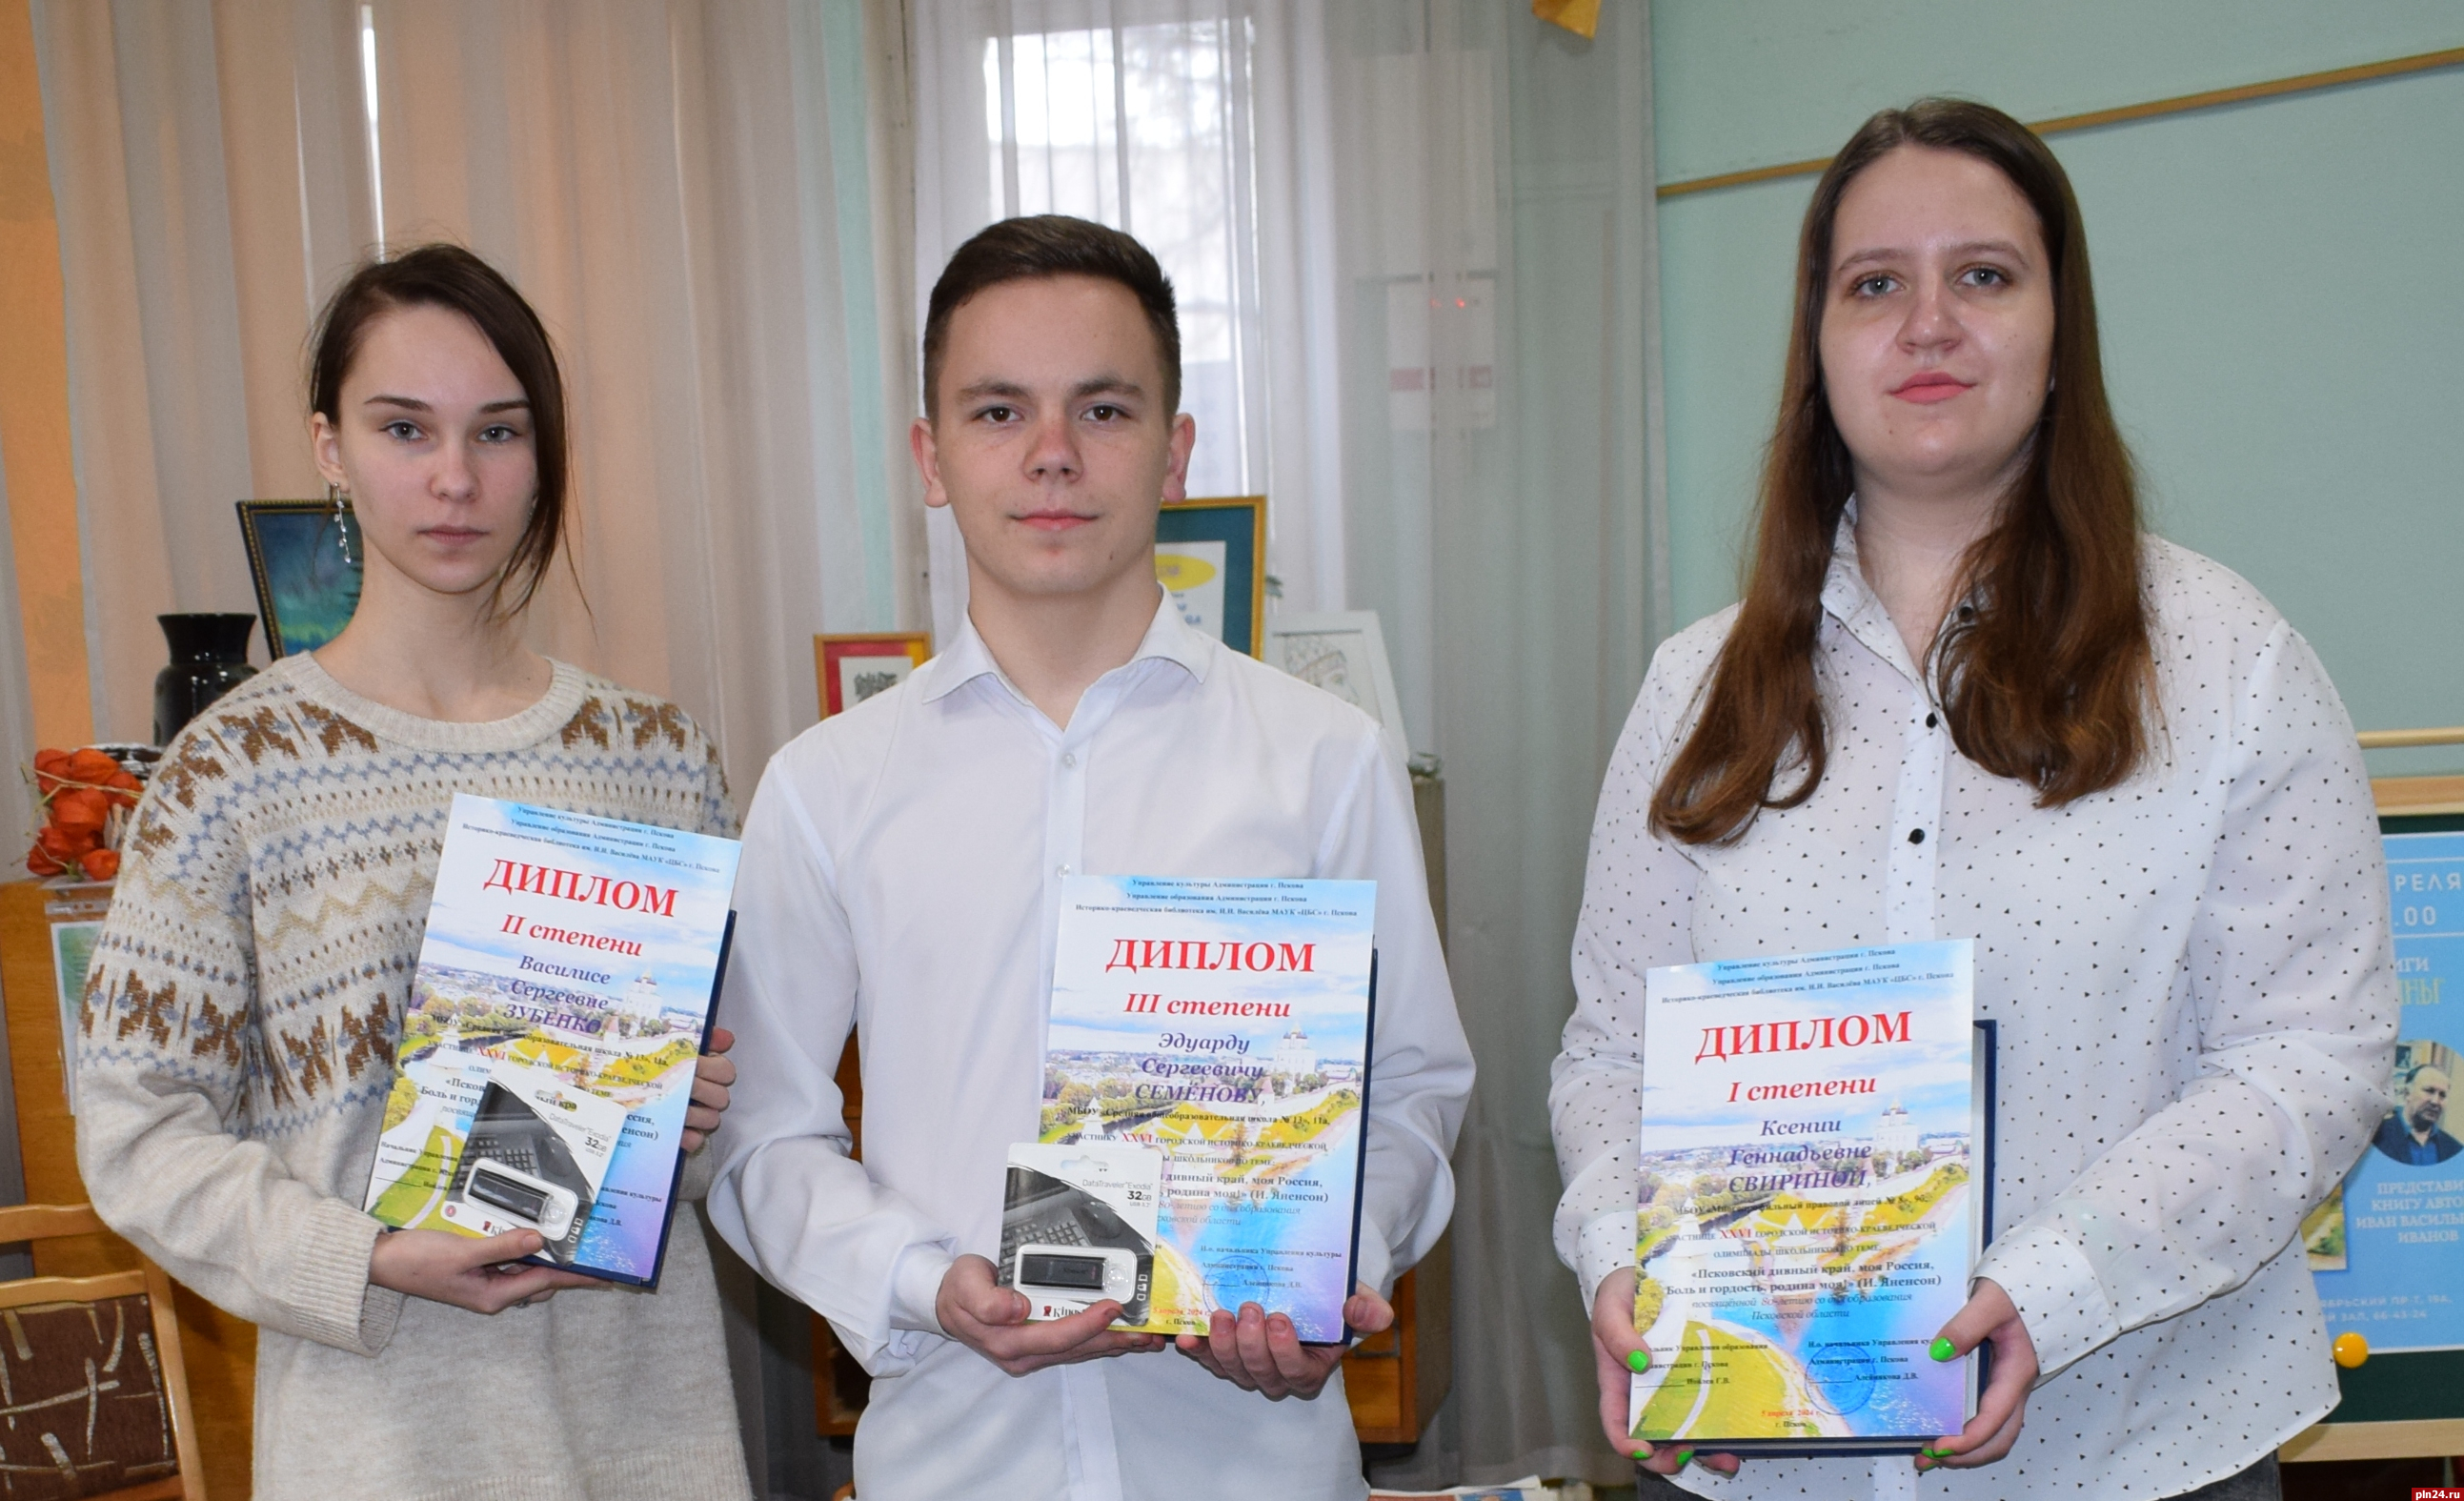 Победители псковской краеведческой олимпиады школьников получили награды за созданные ими игры и экскурсии